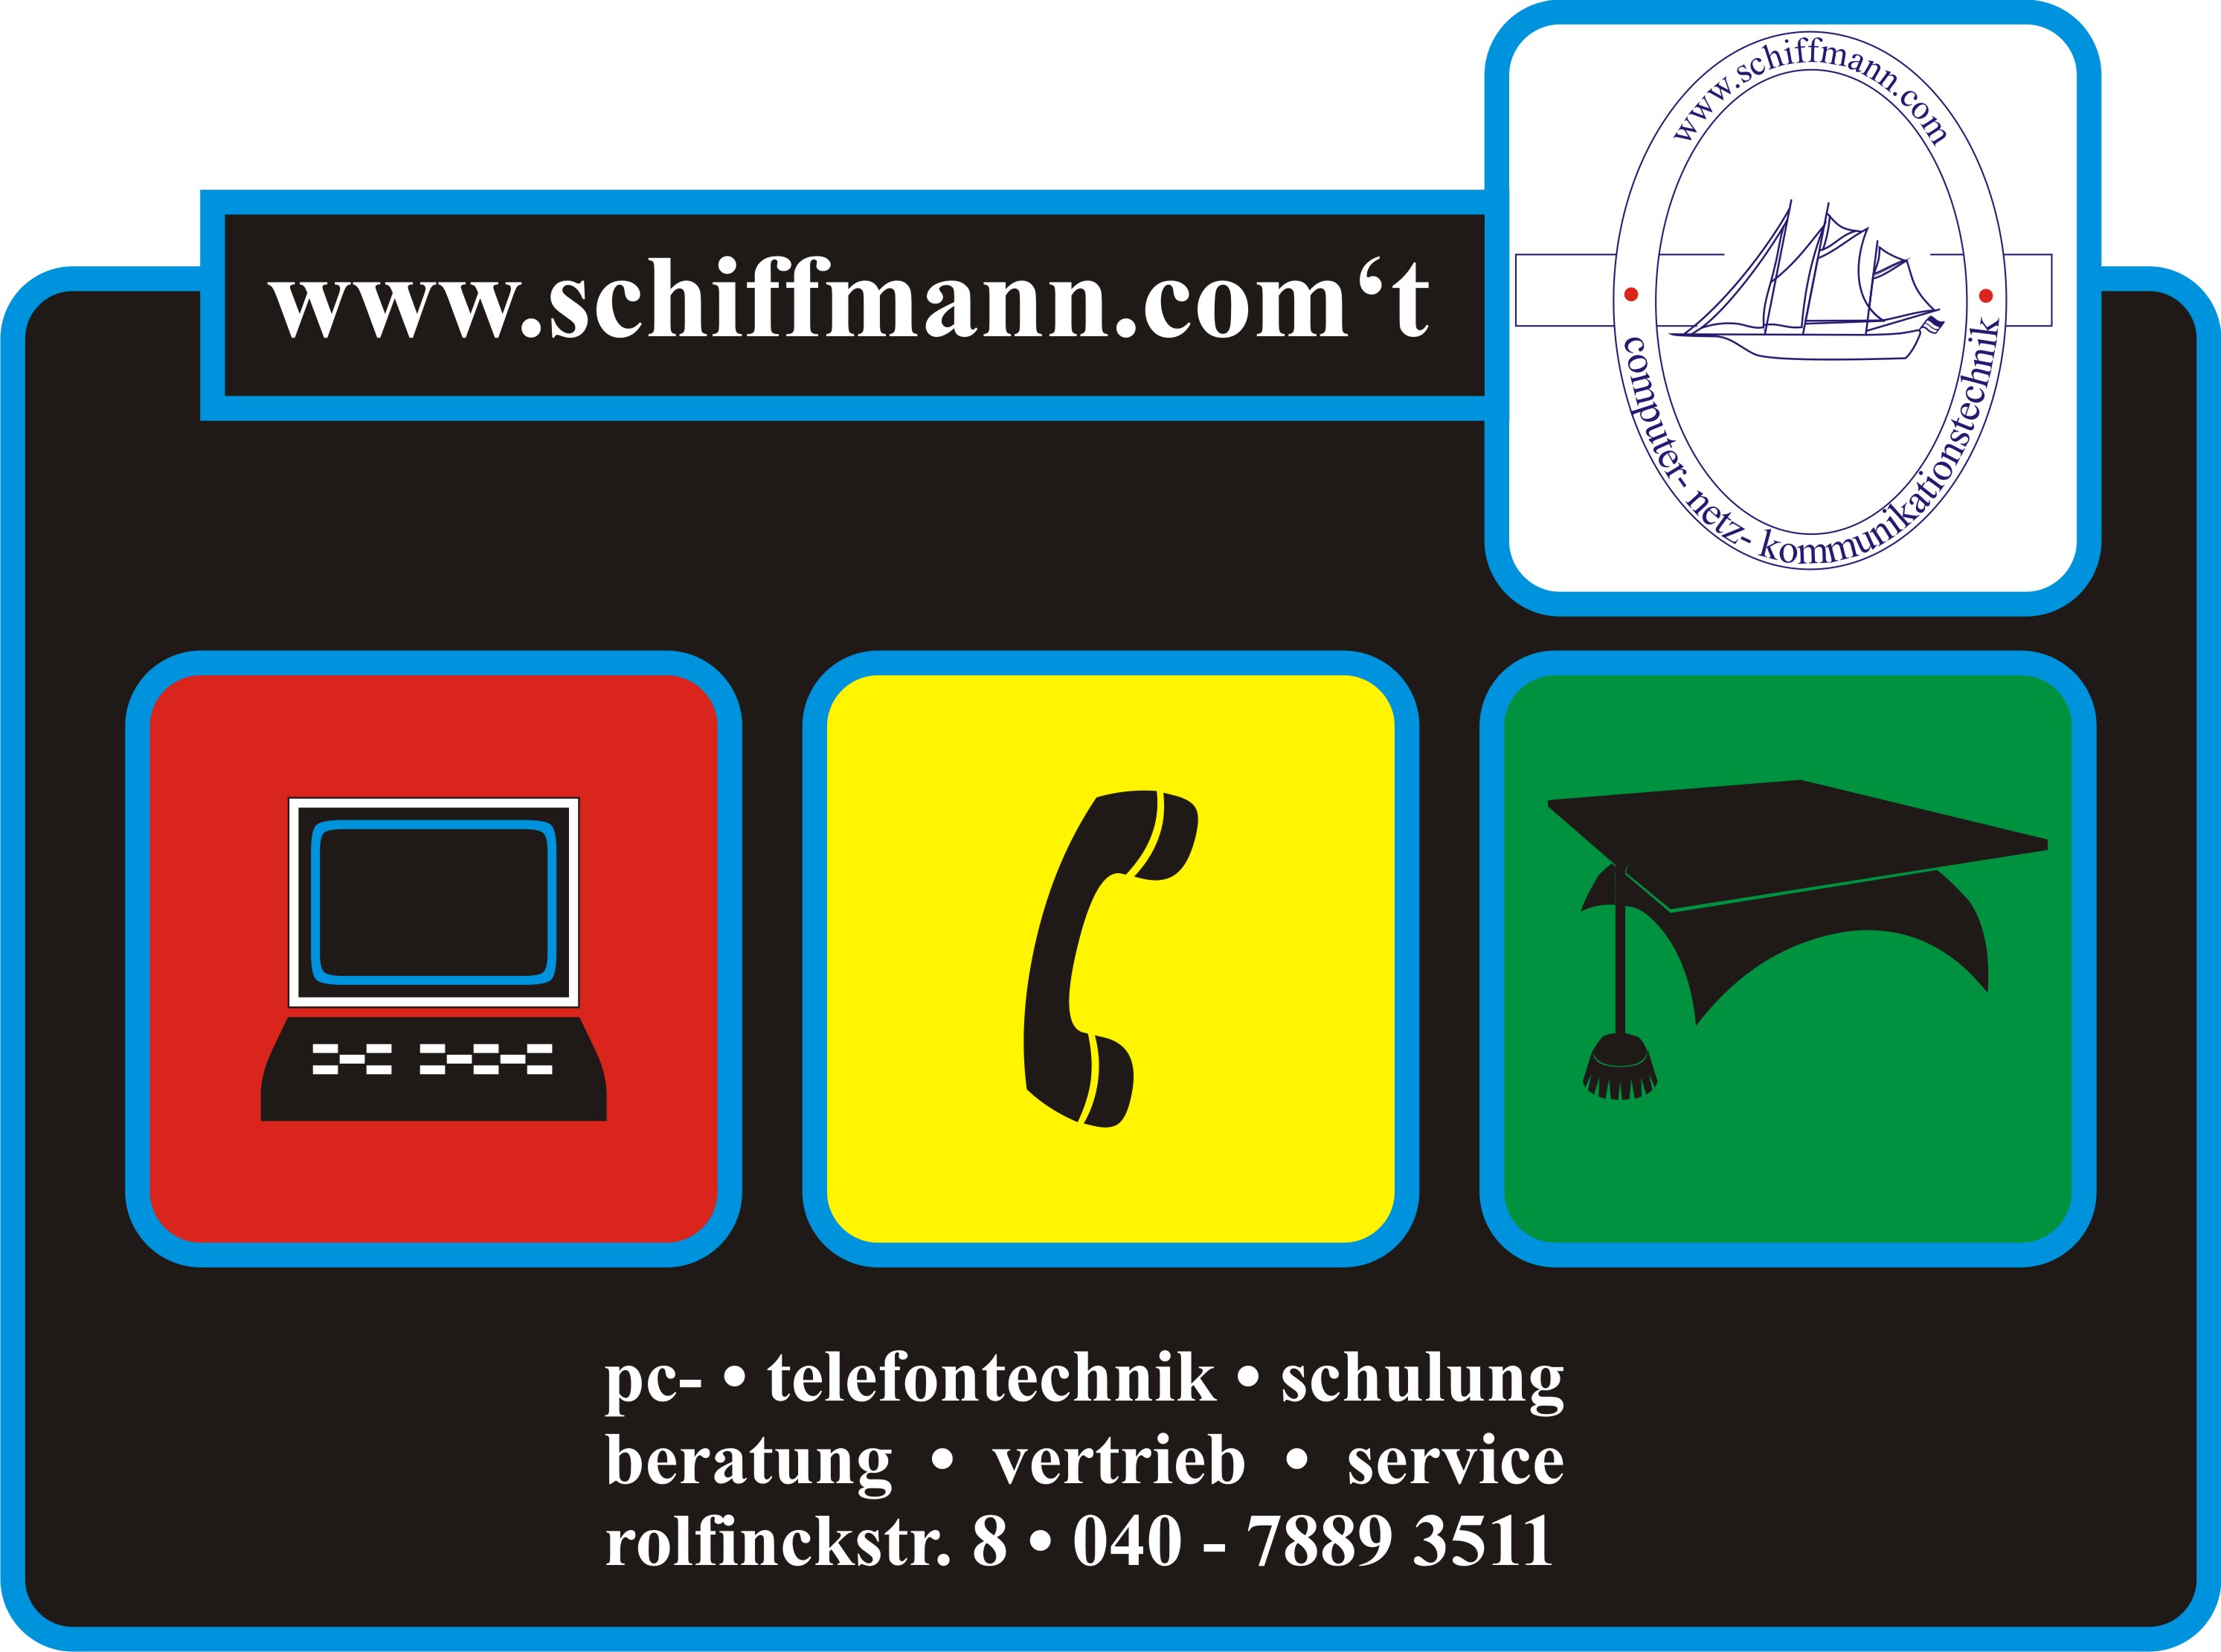 schiffmann.computer 017637743001